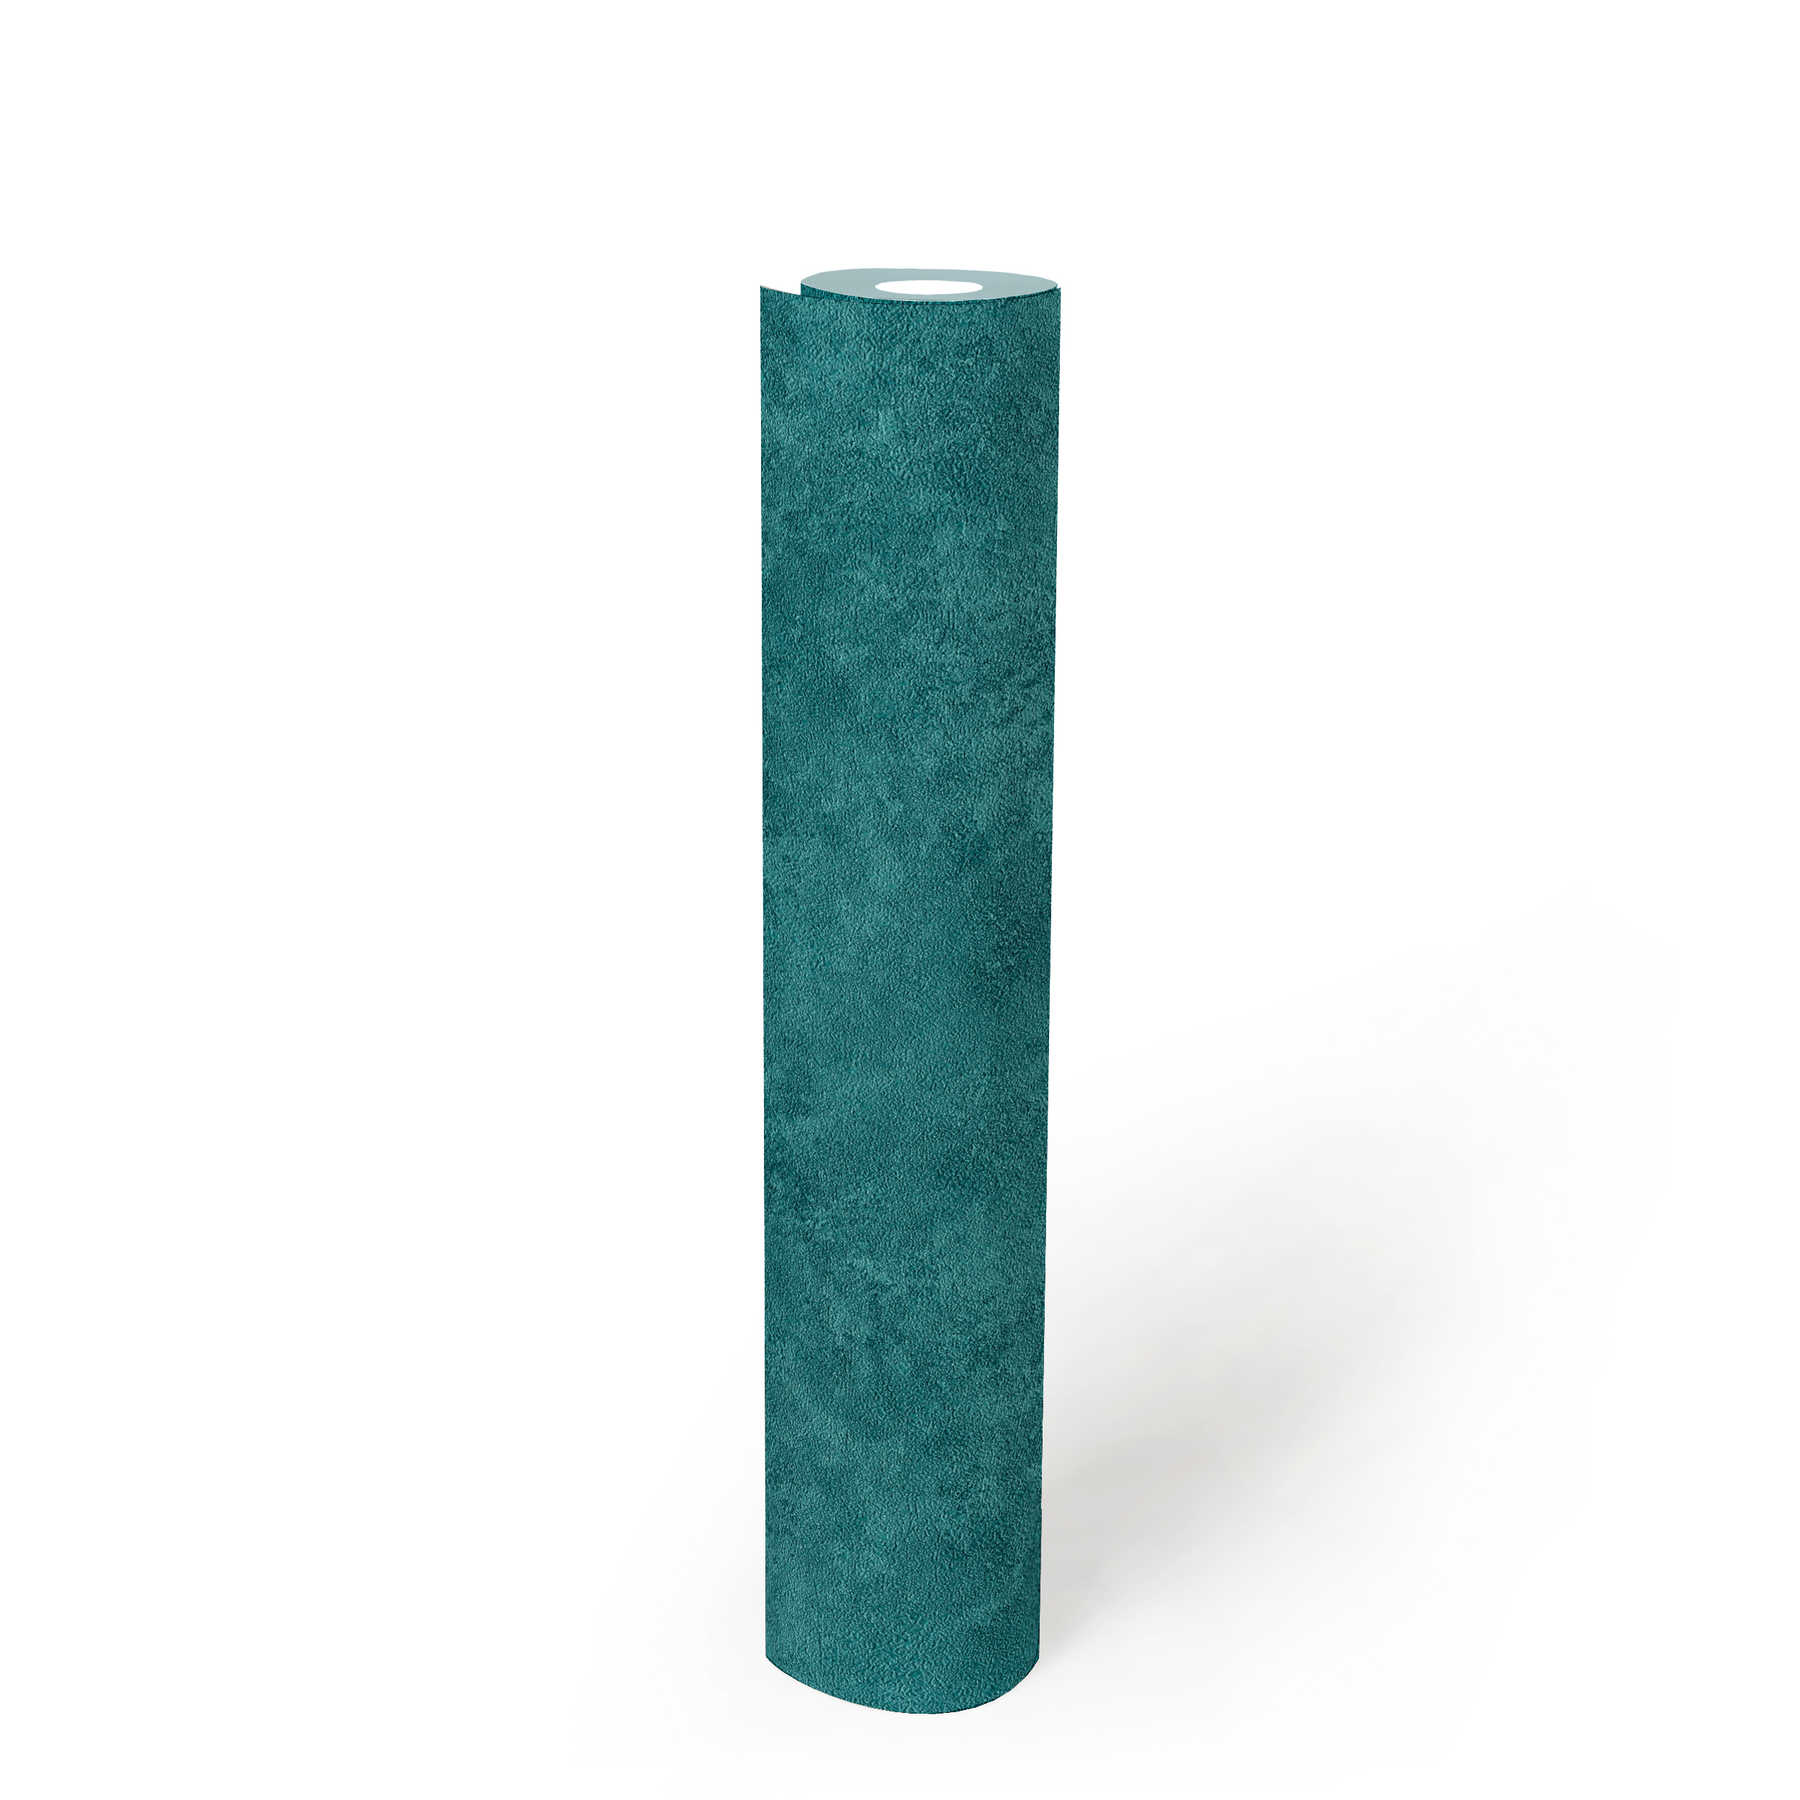             Eenheidsbehang gekleurd gearceerd, natuurlijk structuurpatroon - turkoois, blauw, groen
        